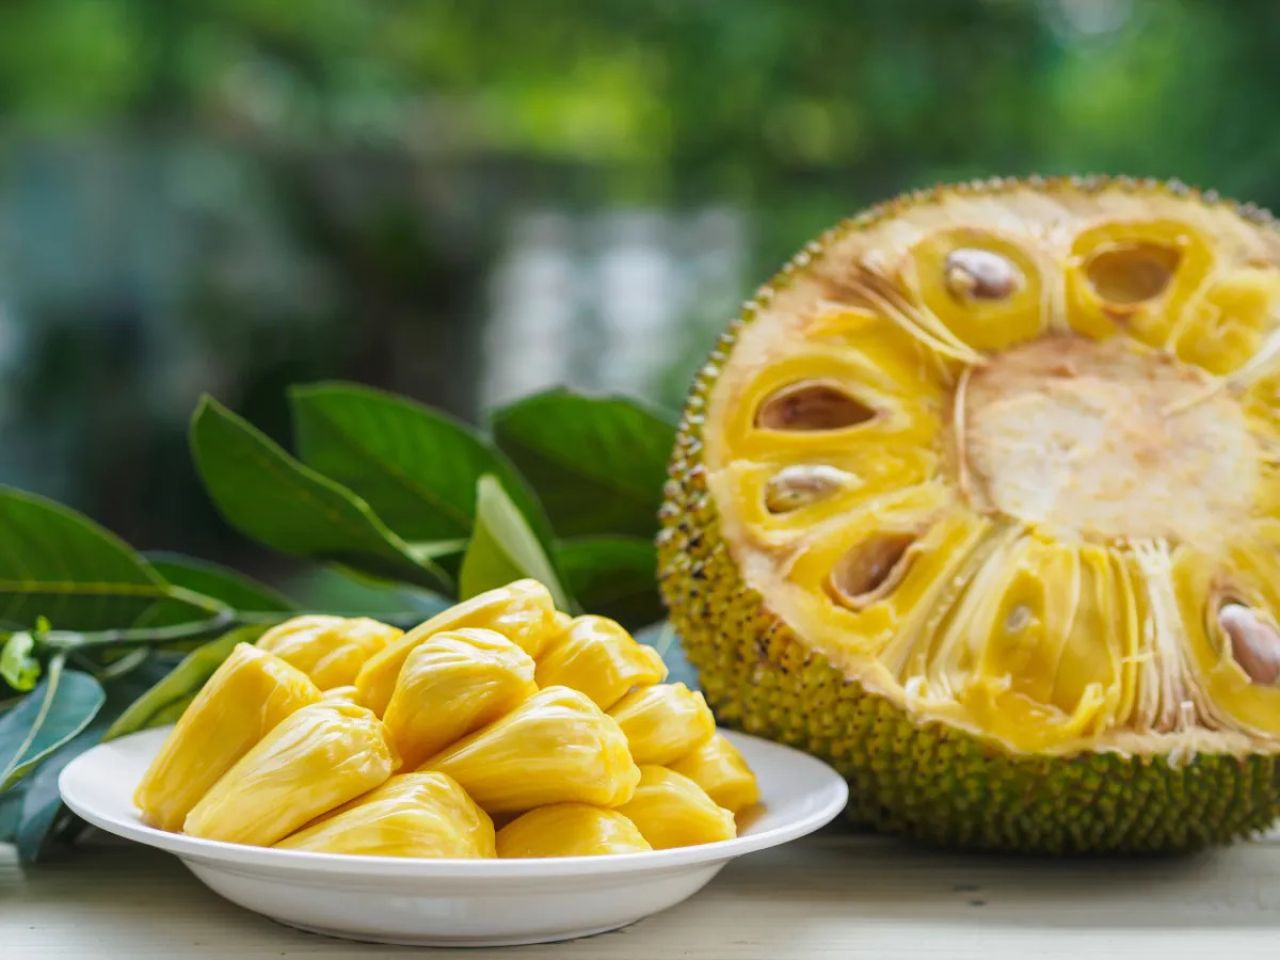 Jackfruit - egzotyczny owoc - odkrycie dla wegan i wegetarian